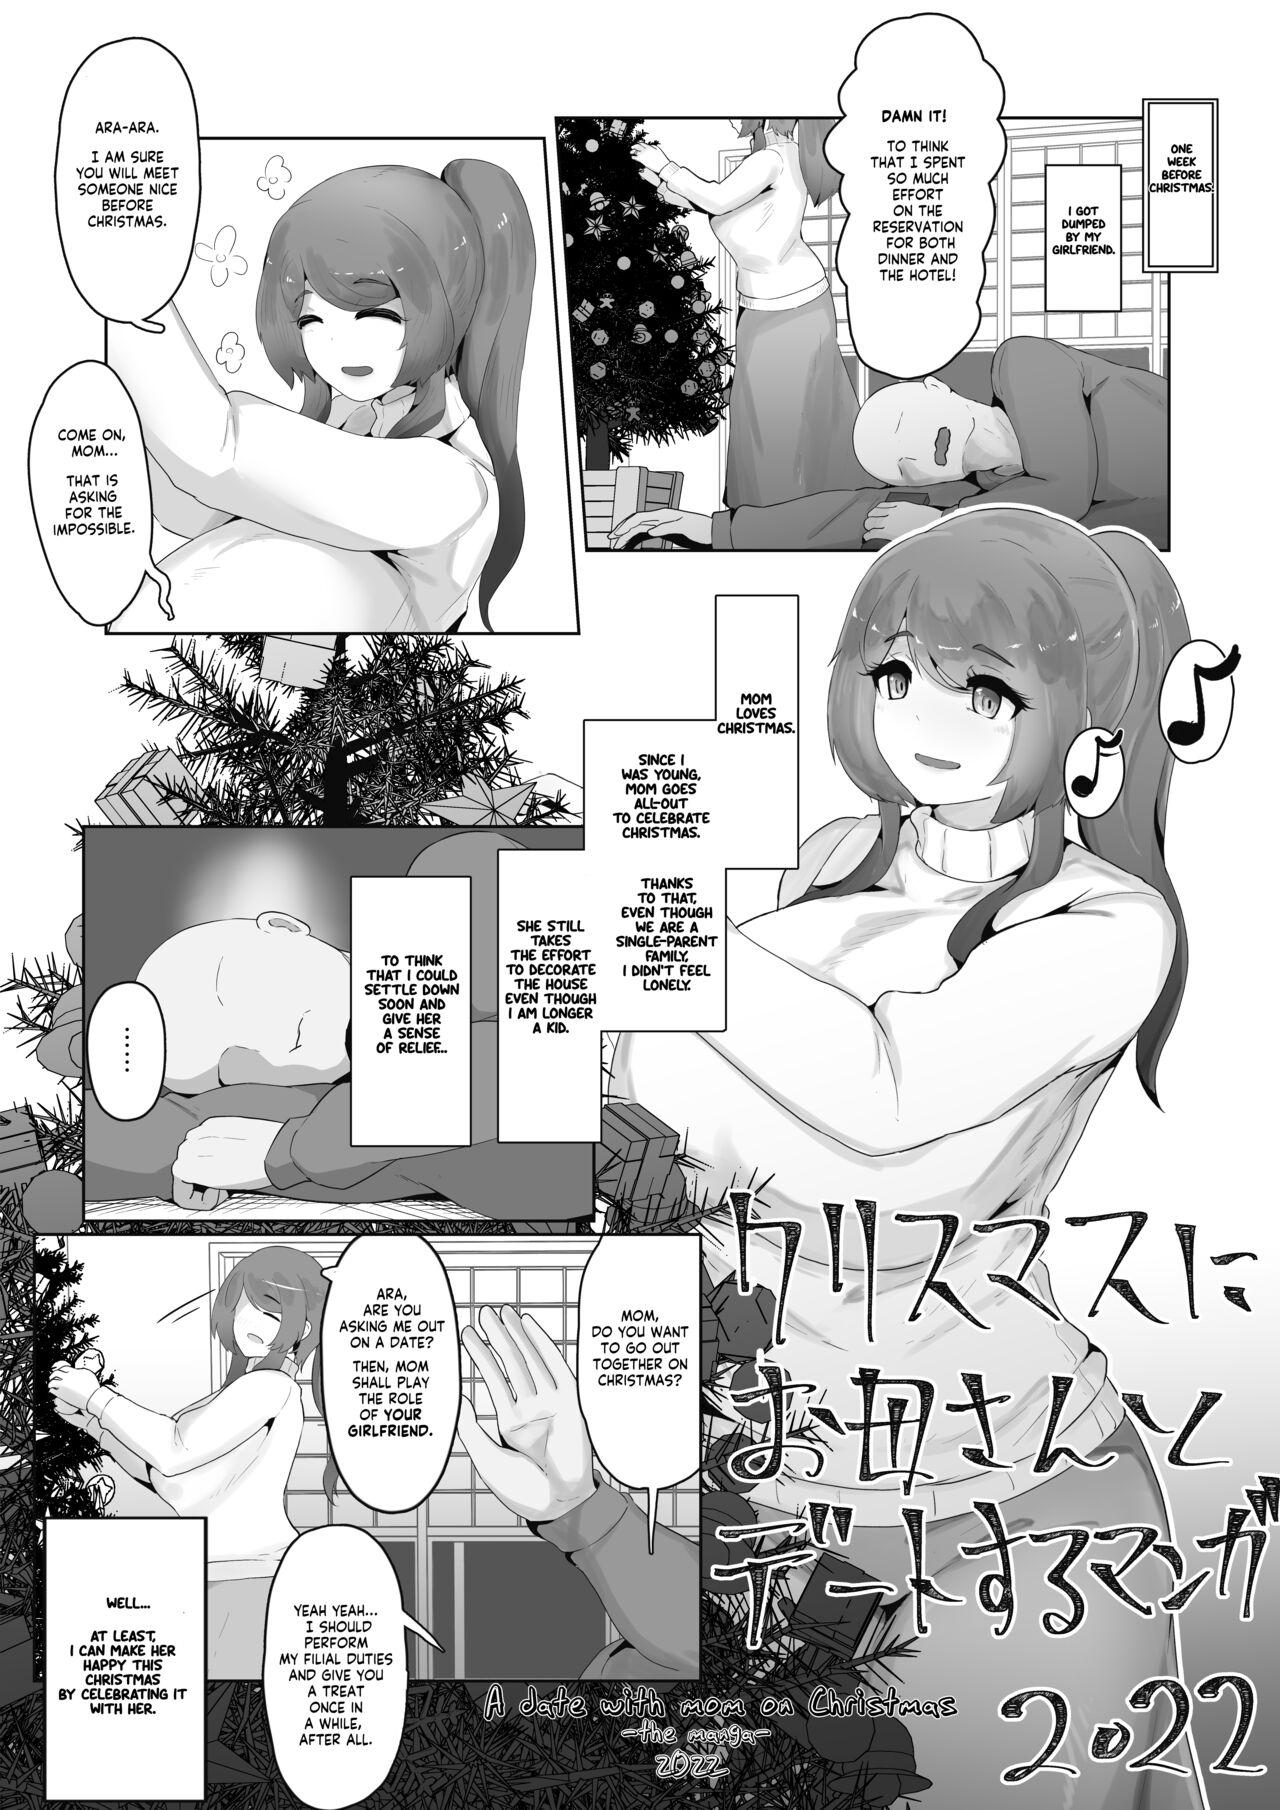 Coroa Christmas Boshi Kan 2022 Wanking - Page 9